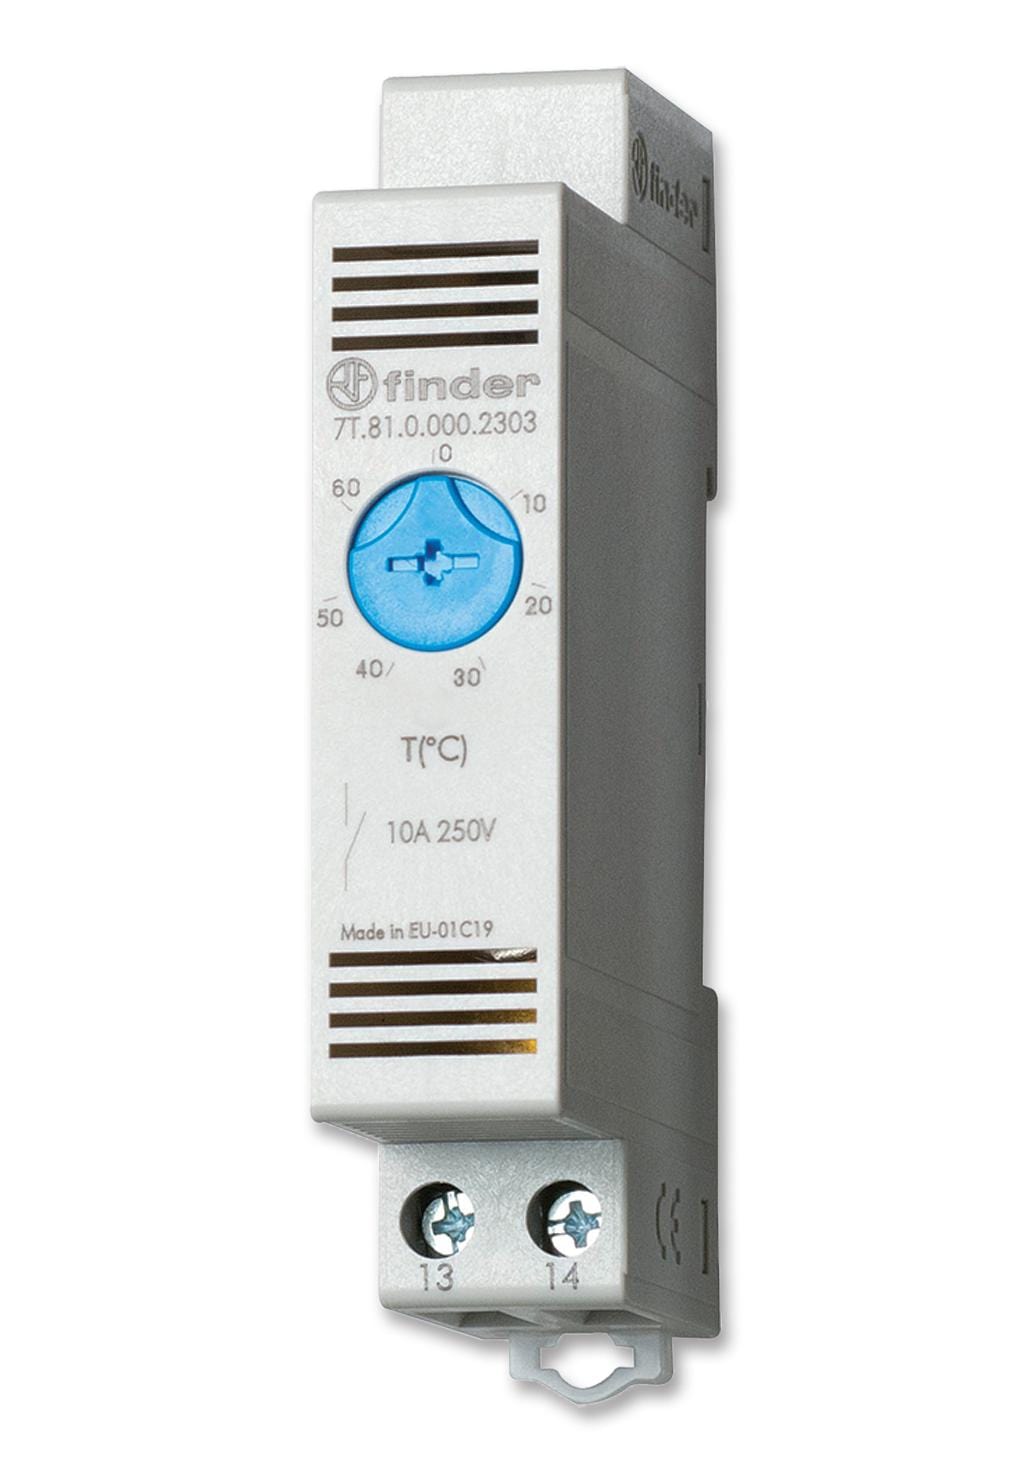 FINDER Thermostats 7T.81.0.000.2303 THERMOSTAT, NO, 0 DEG TO 60 DEG, 250V FINDER 2295781 7T.81.0.000.2303